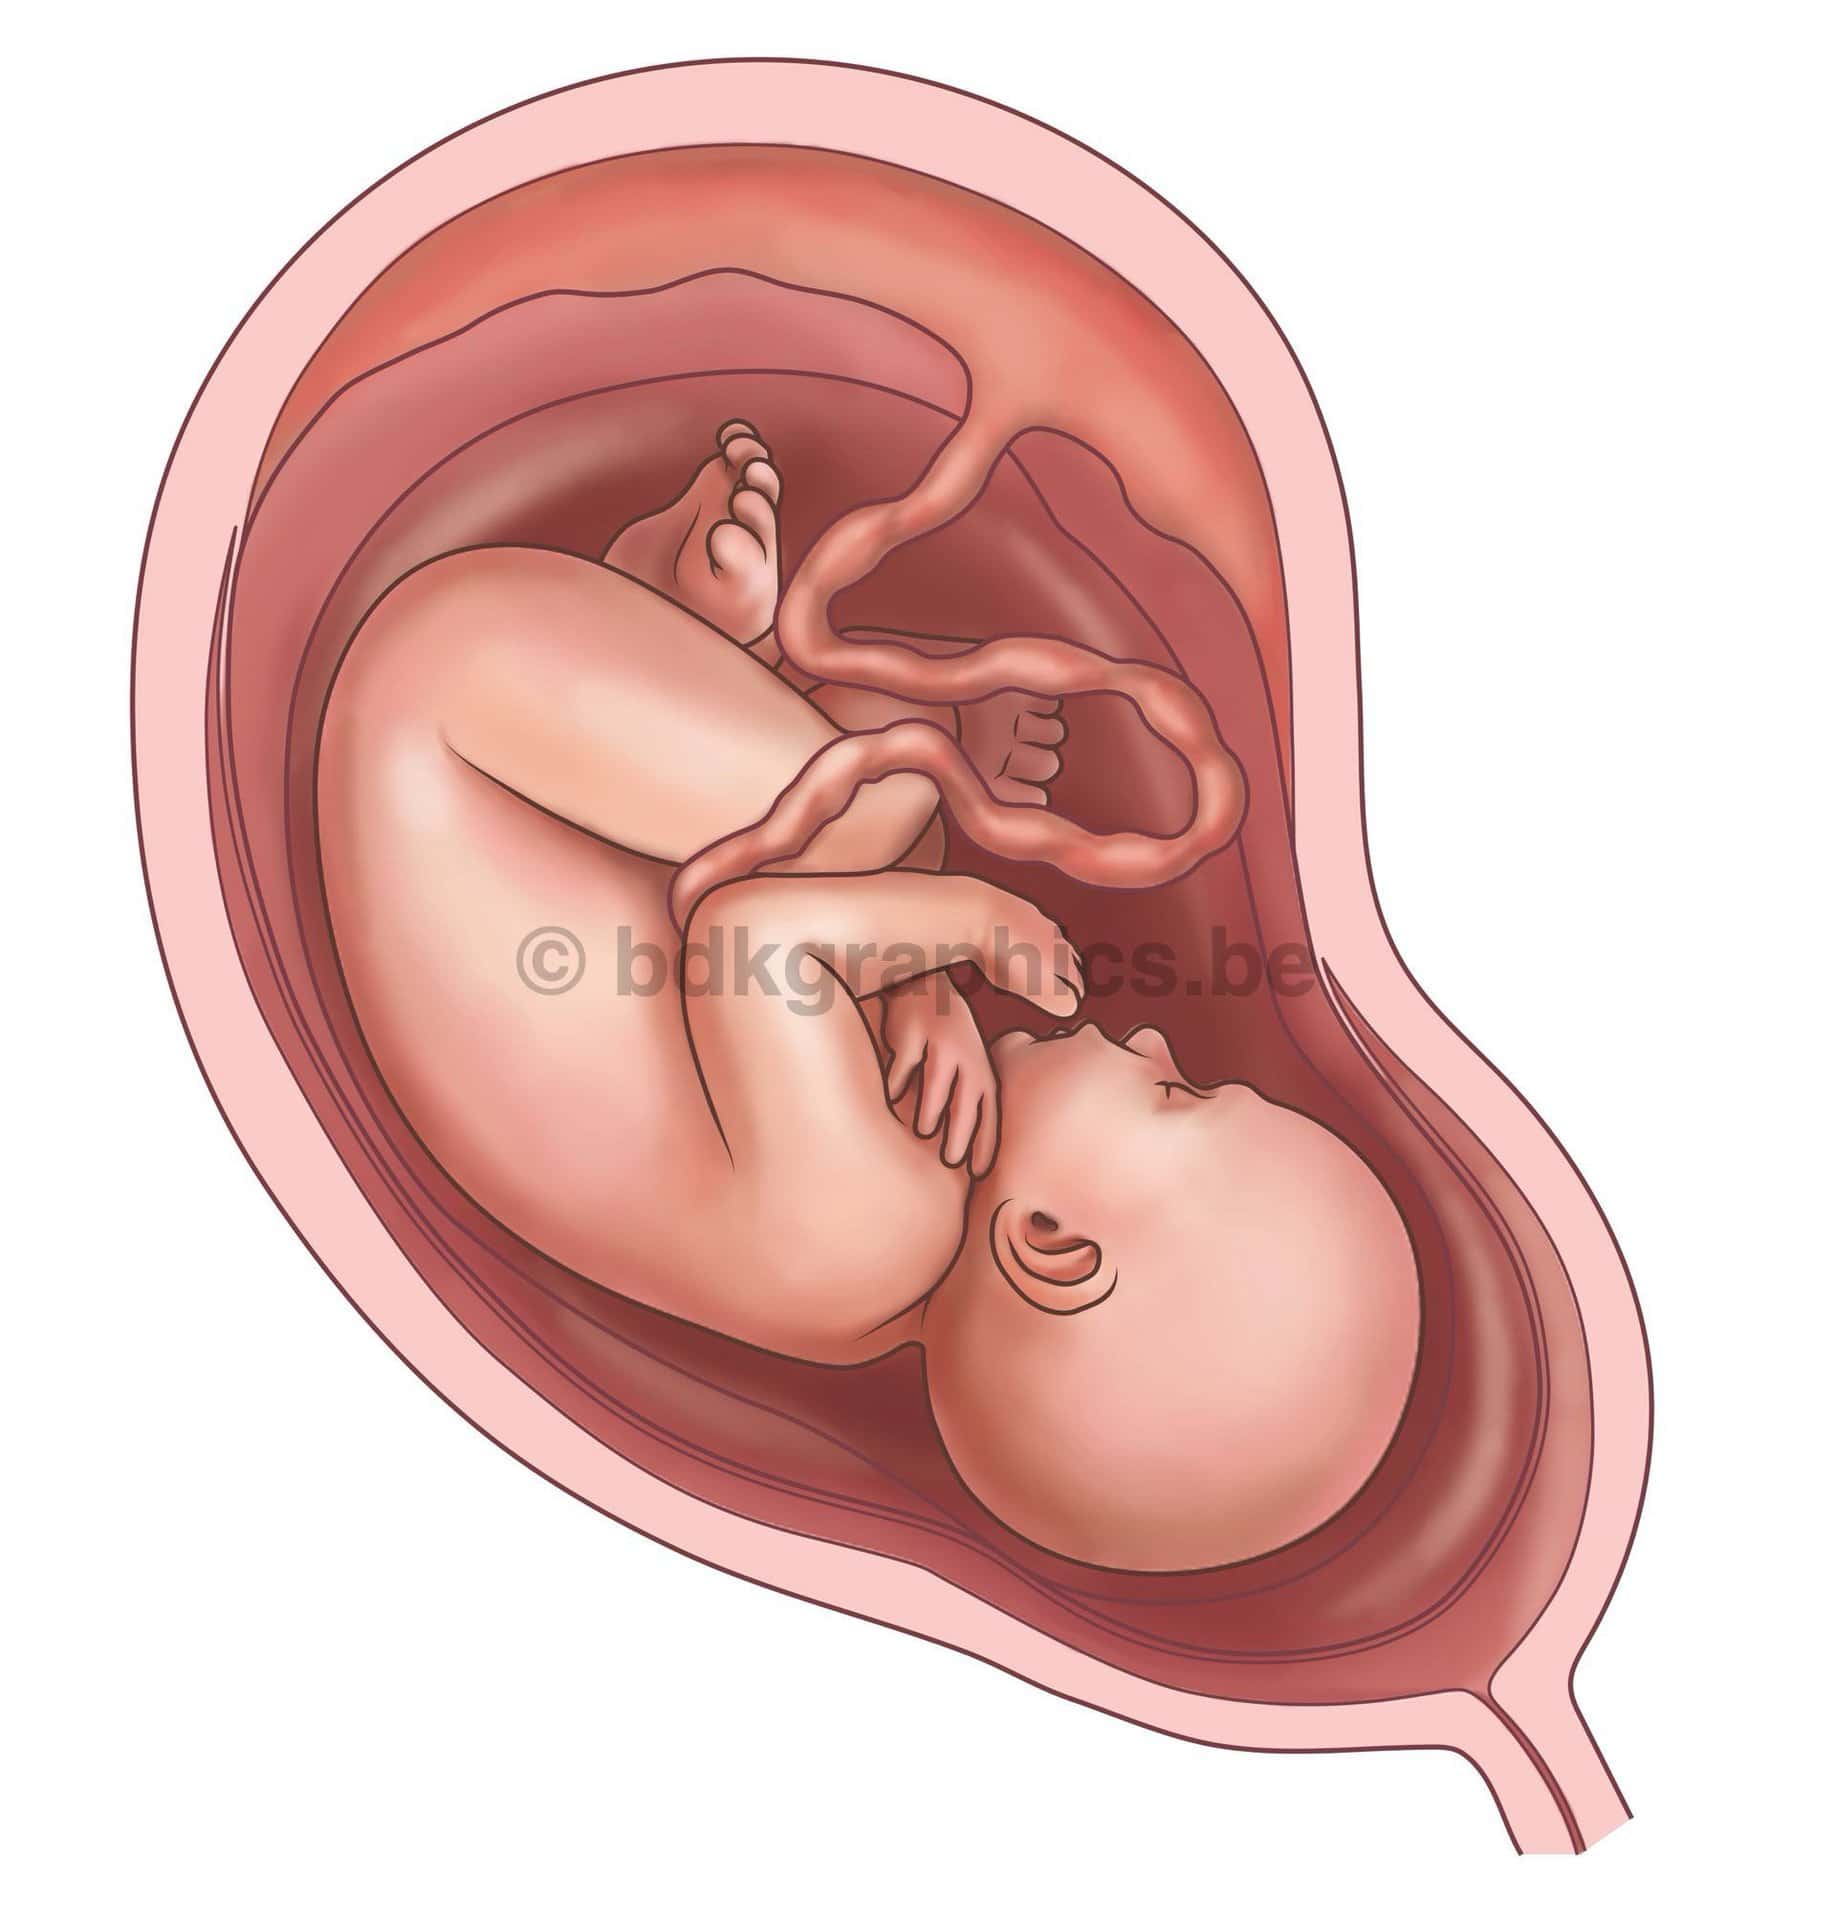 Een foetus in de baarmoeder.